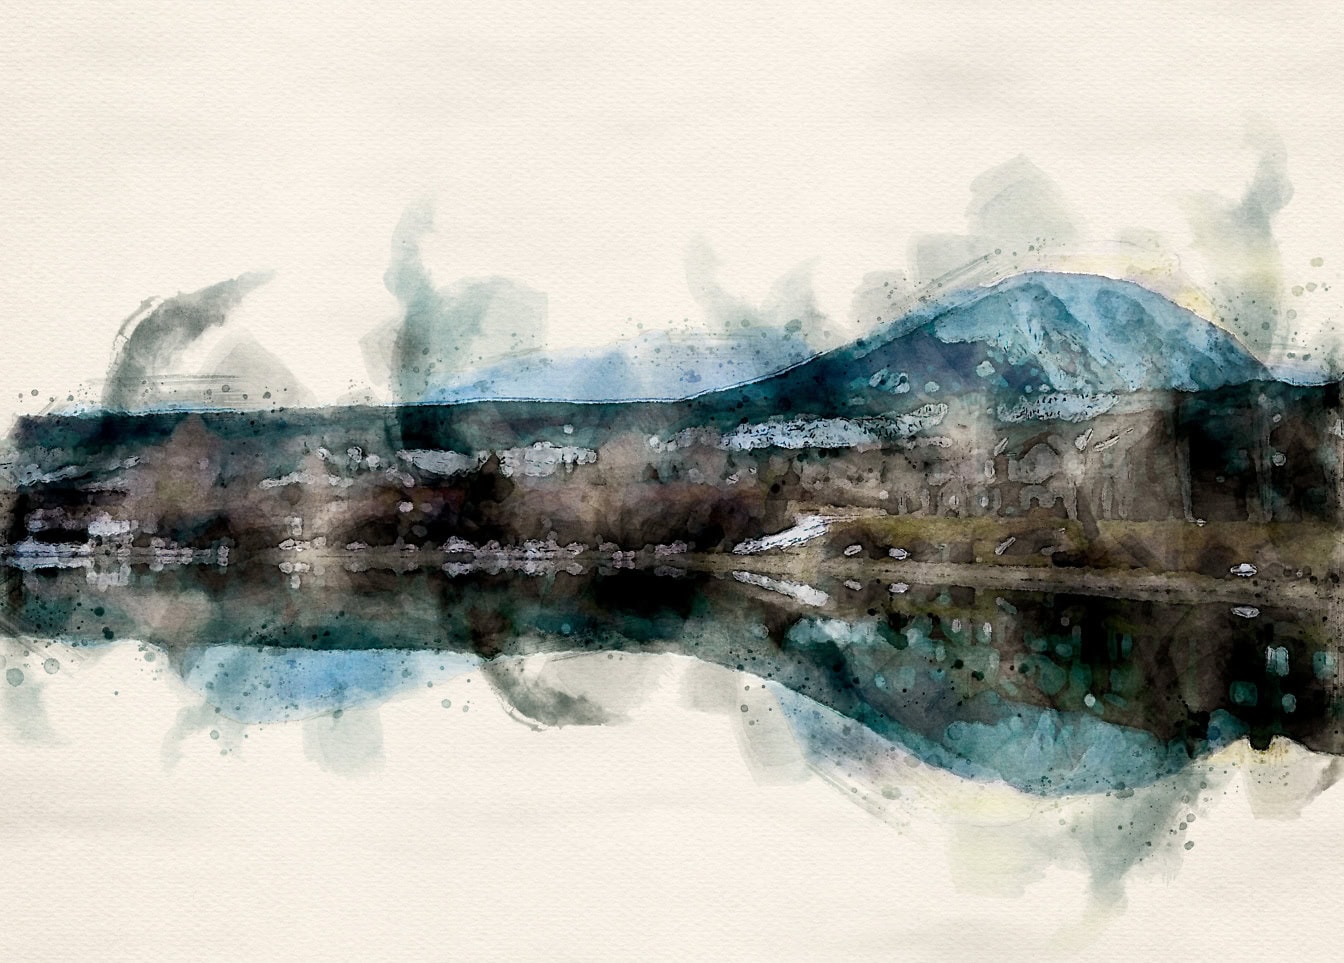 Abstrakt vattenfärg av en sjö med ett berg i bakgrunden